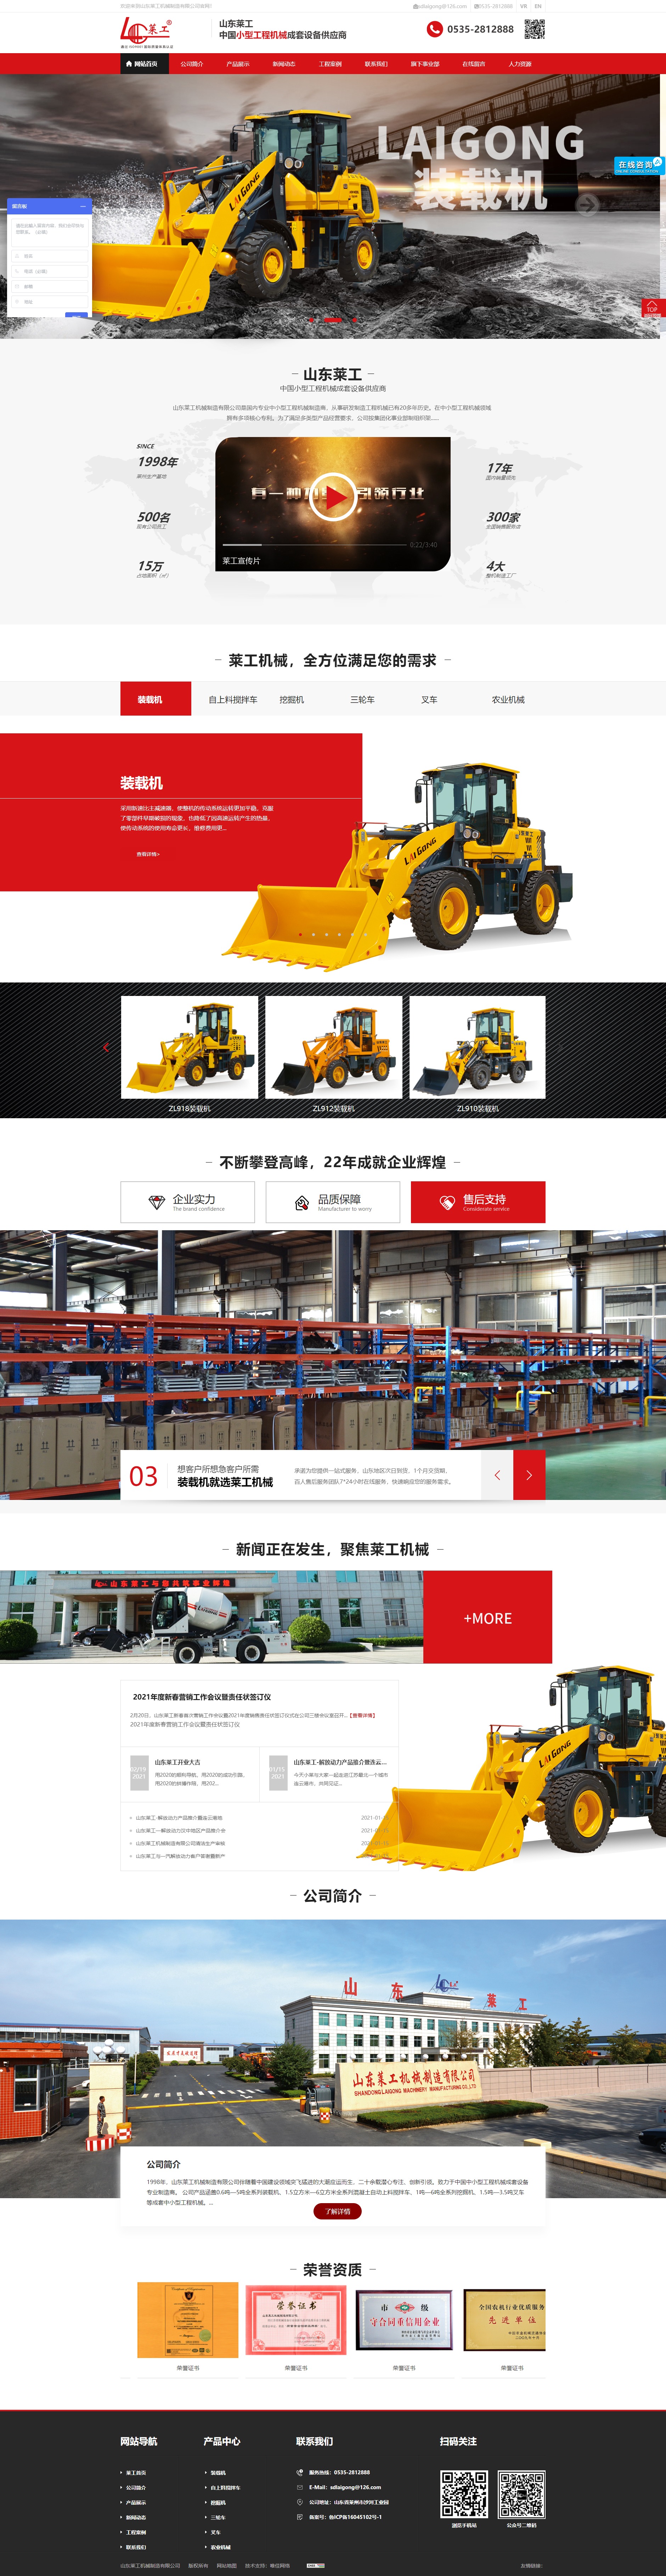 山东莱工机械制造有限公司网站案例